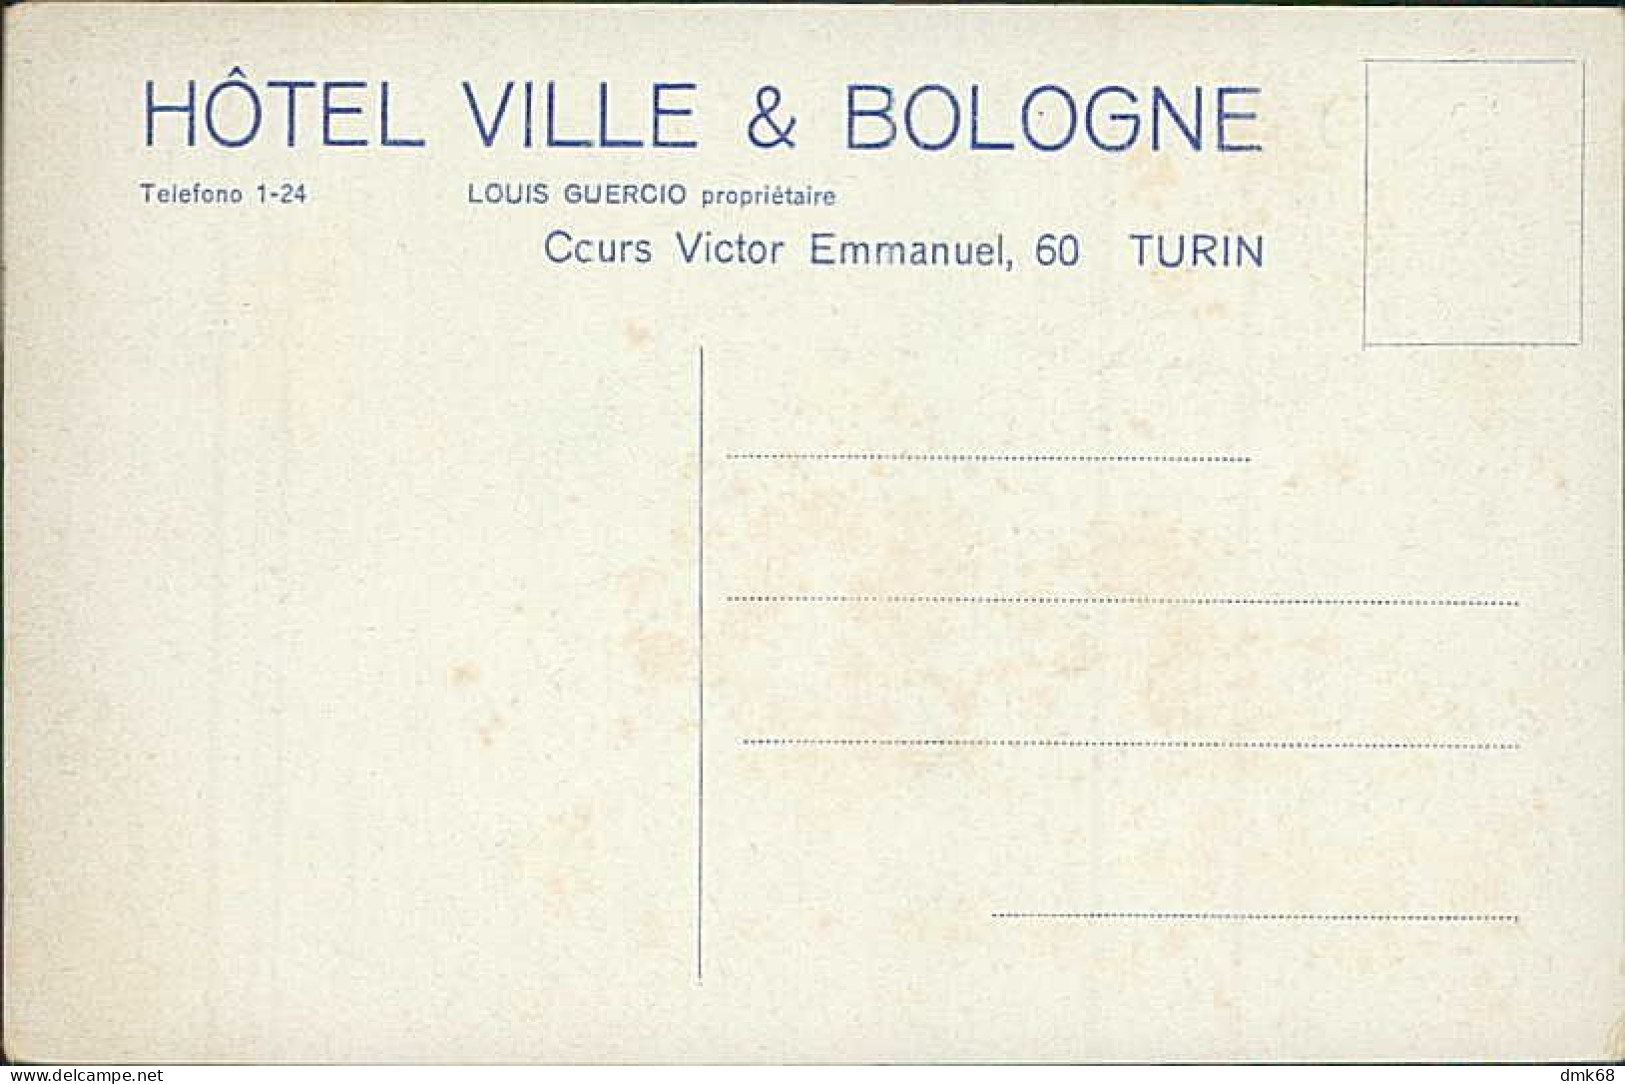 TORINO - HOTEL VILLE & BOLOGNE - 1910s (18282) - Cafes, Hotels & Restaurants